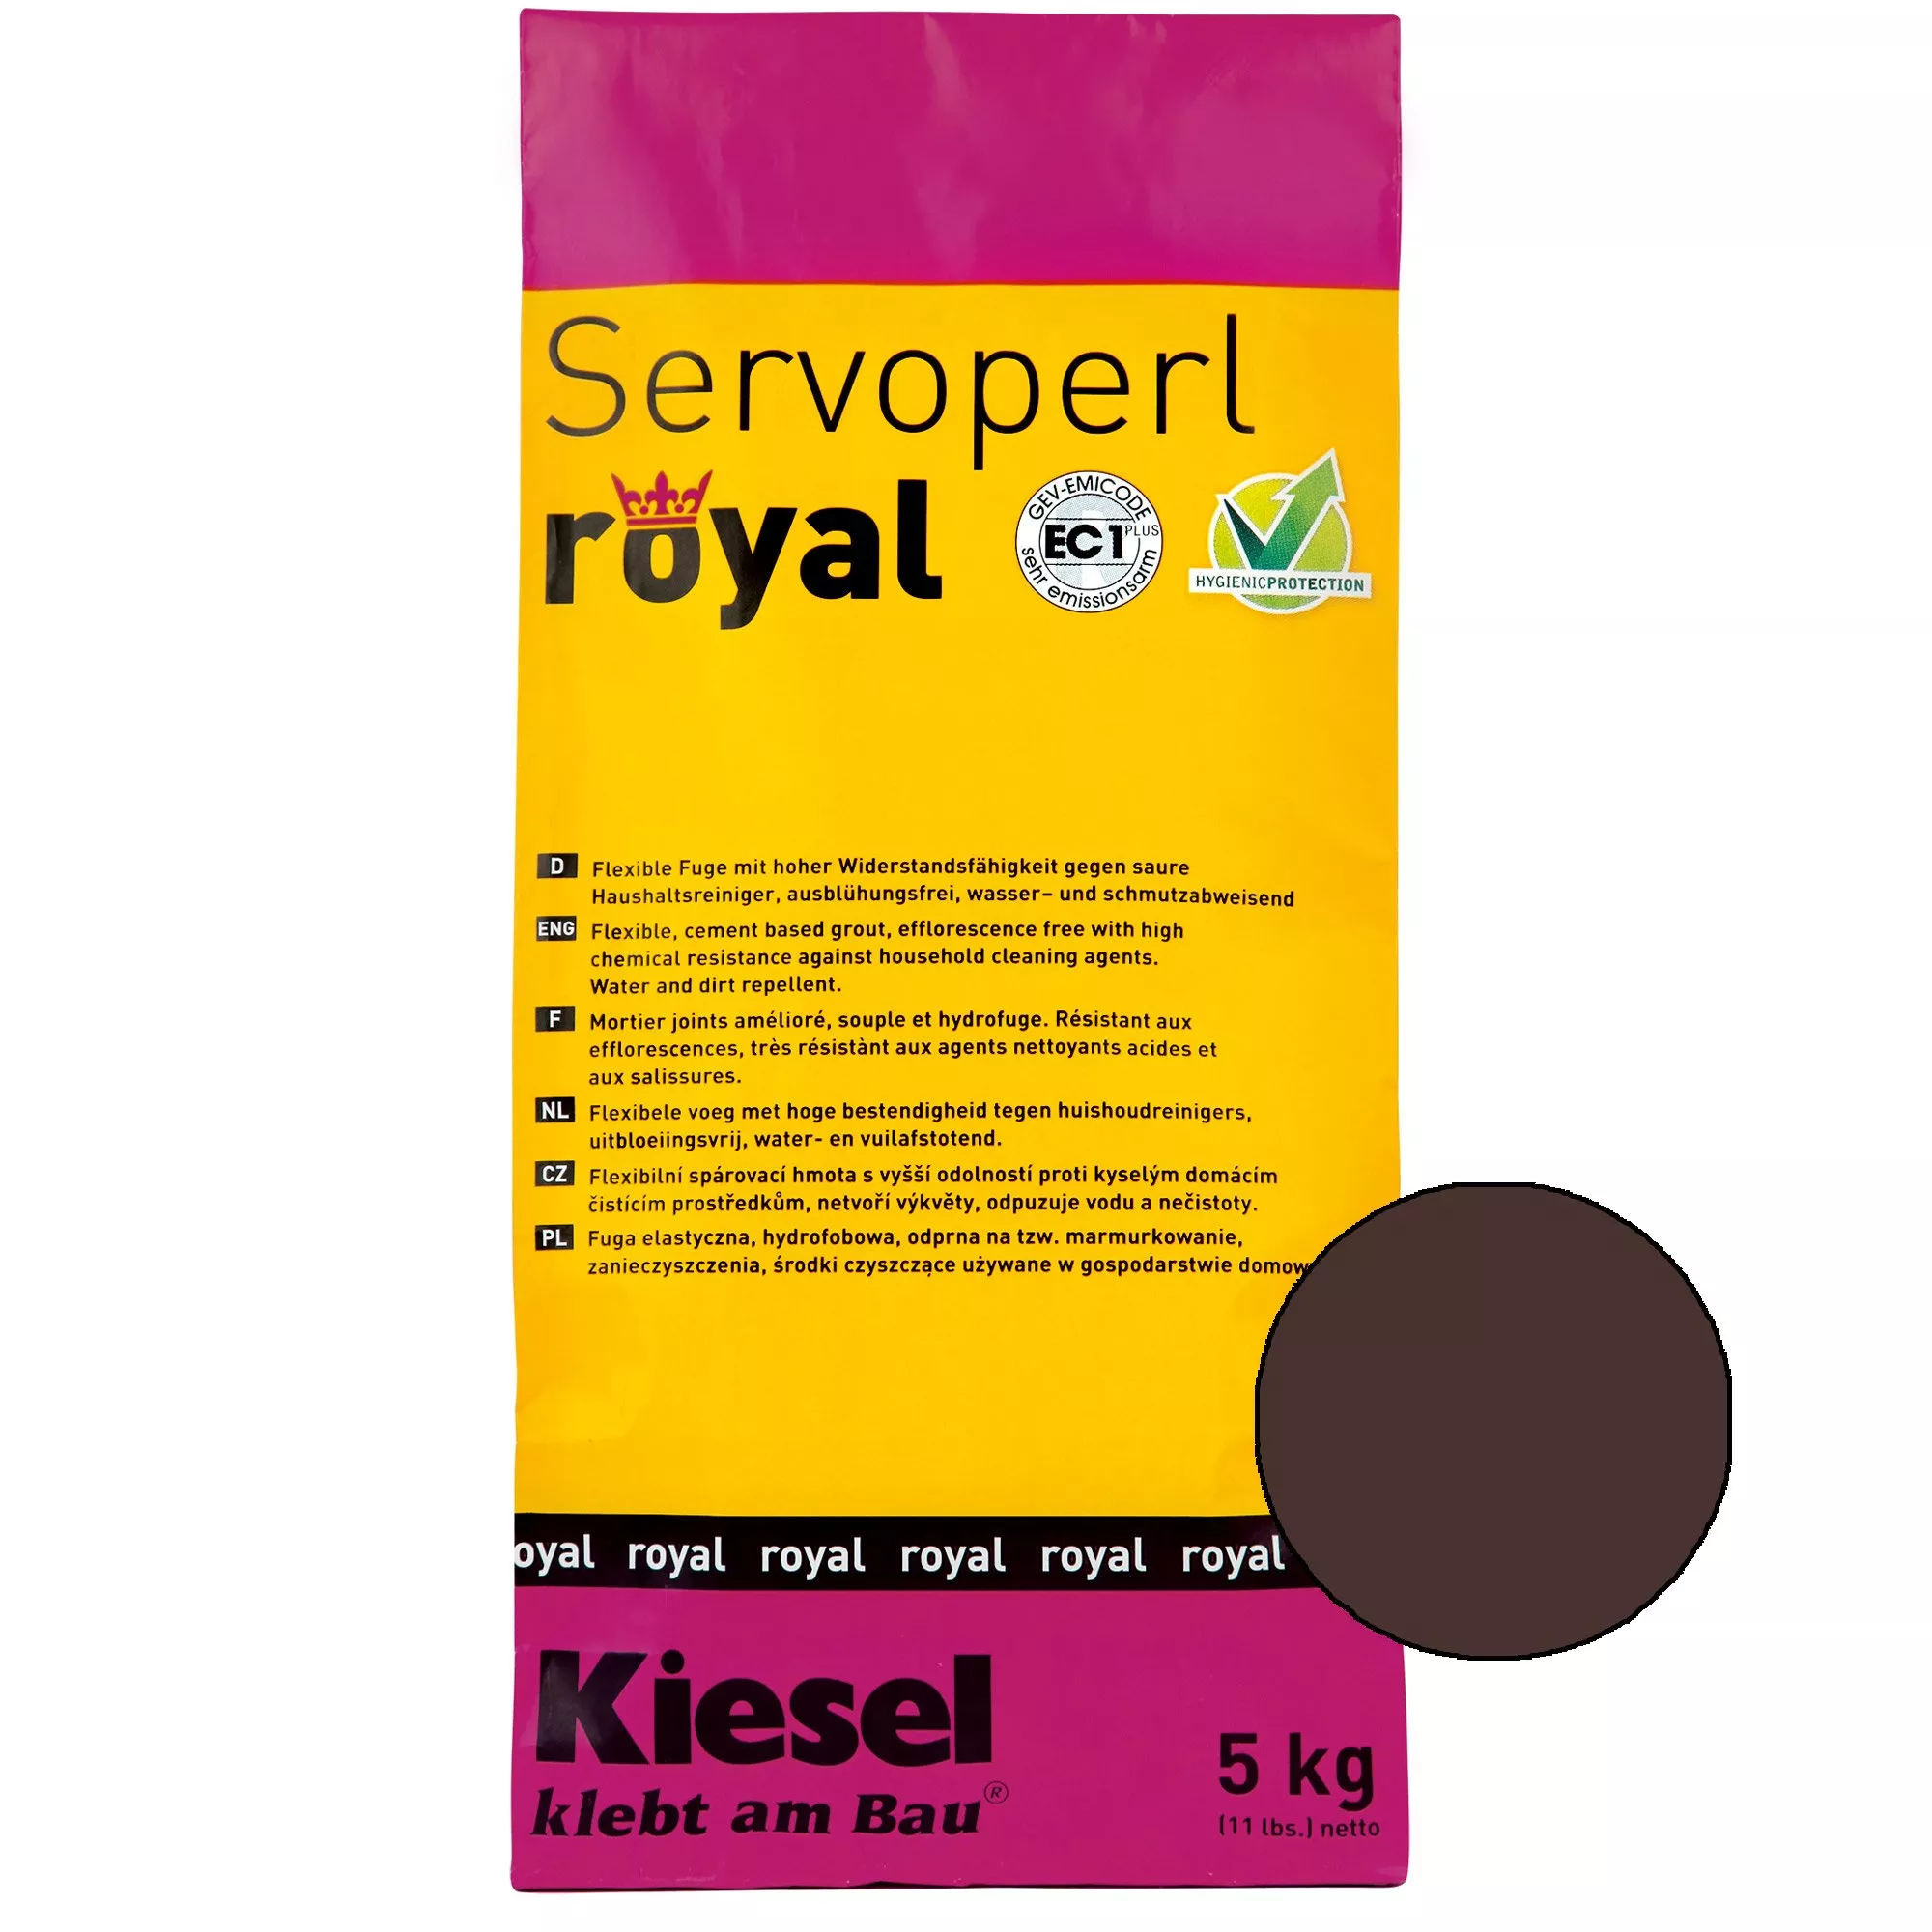 Kiesel Servoperl royal - Flexible, wasser- und schmutzabweisende Fuge 